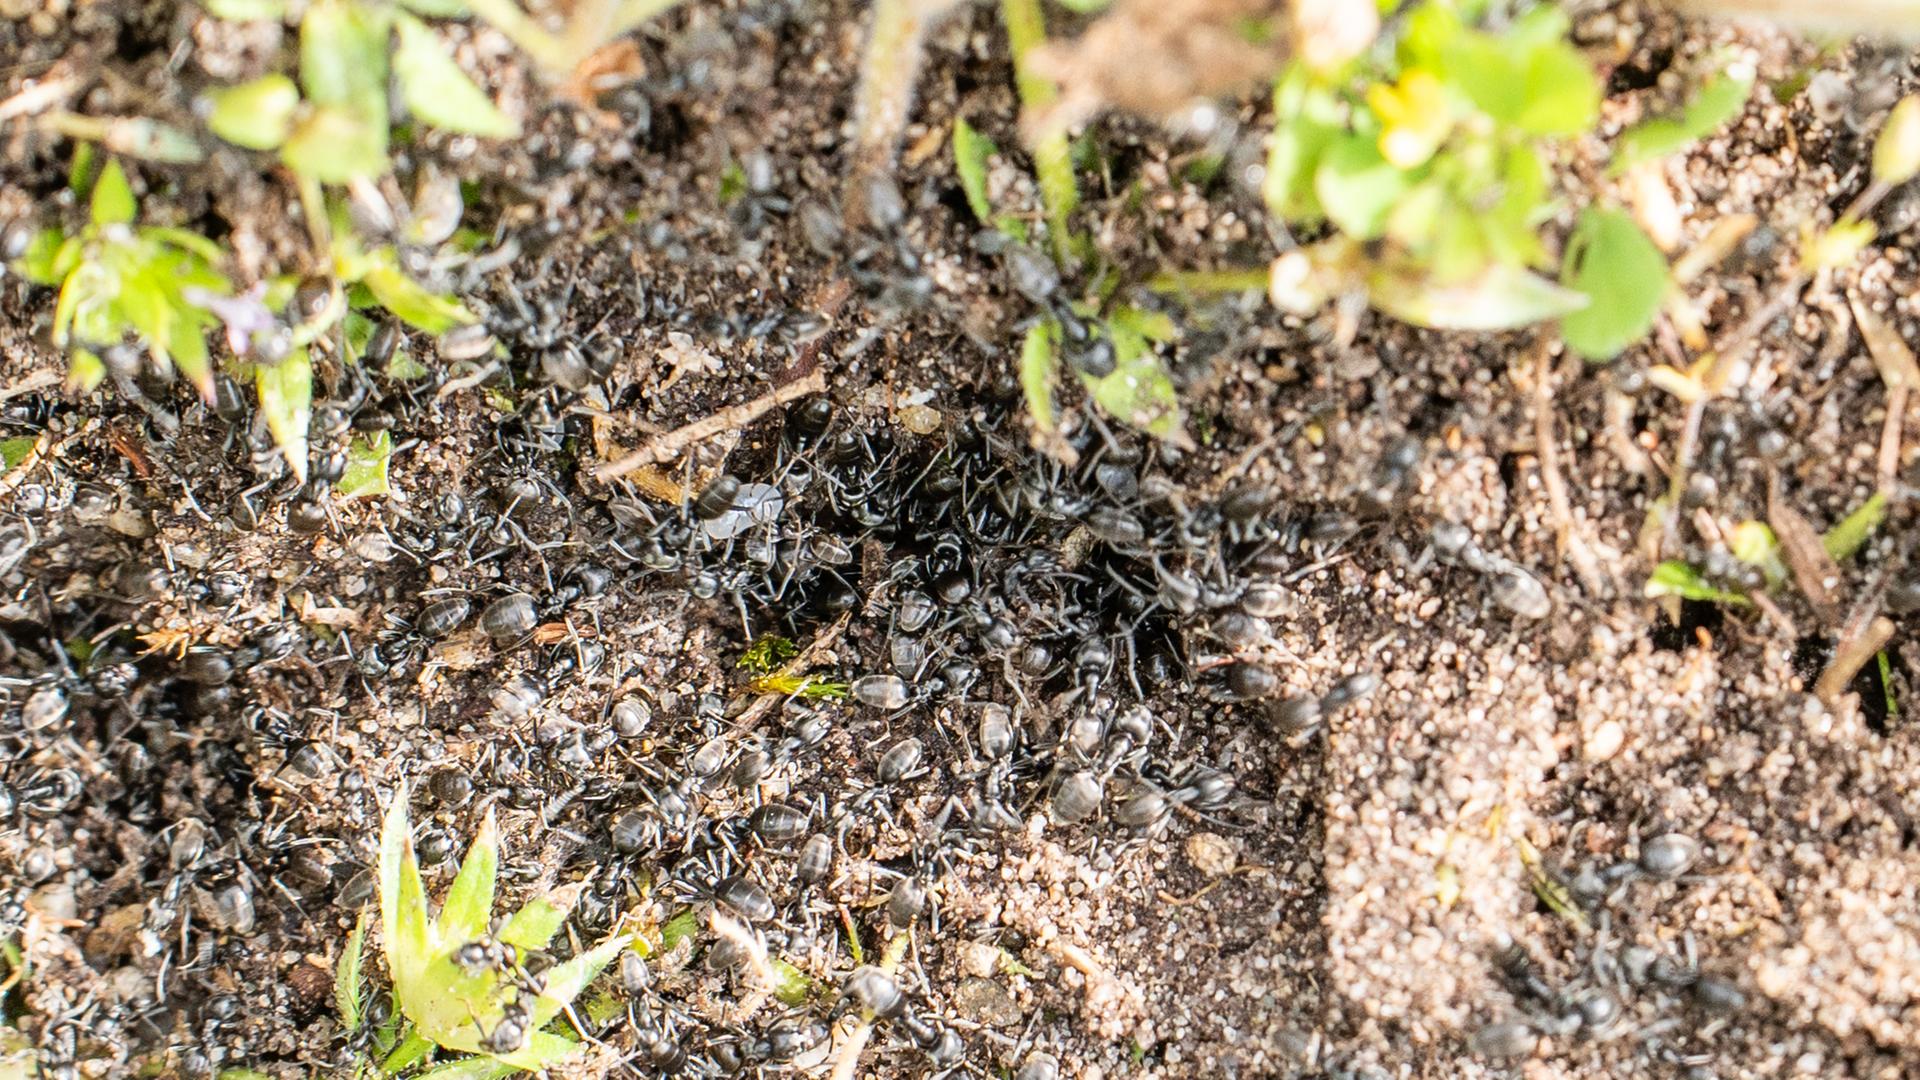 Baden-Württemberg, Kehl: Invasive Ameisen der Art Tapinoma magnum sind auf einer Fläche in der badischen Stadt Kehl zu sehen.